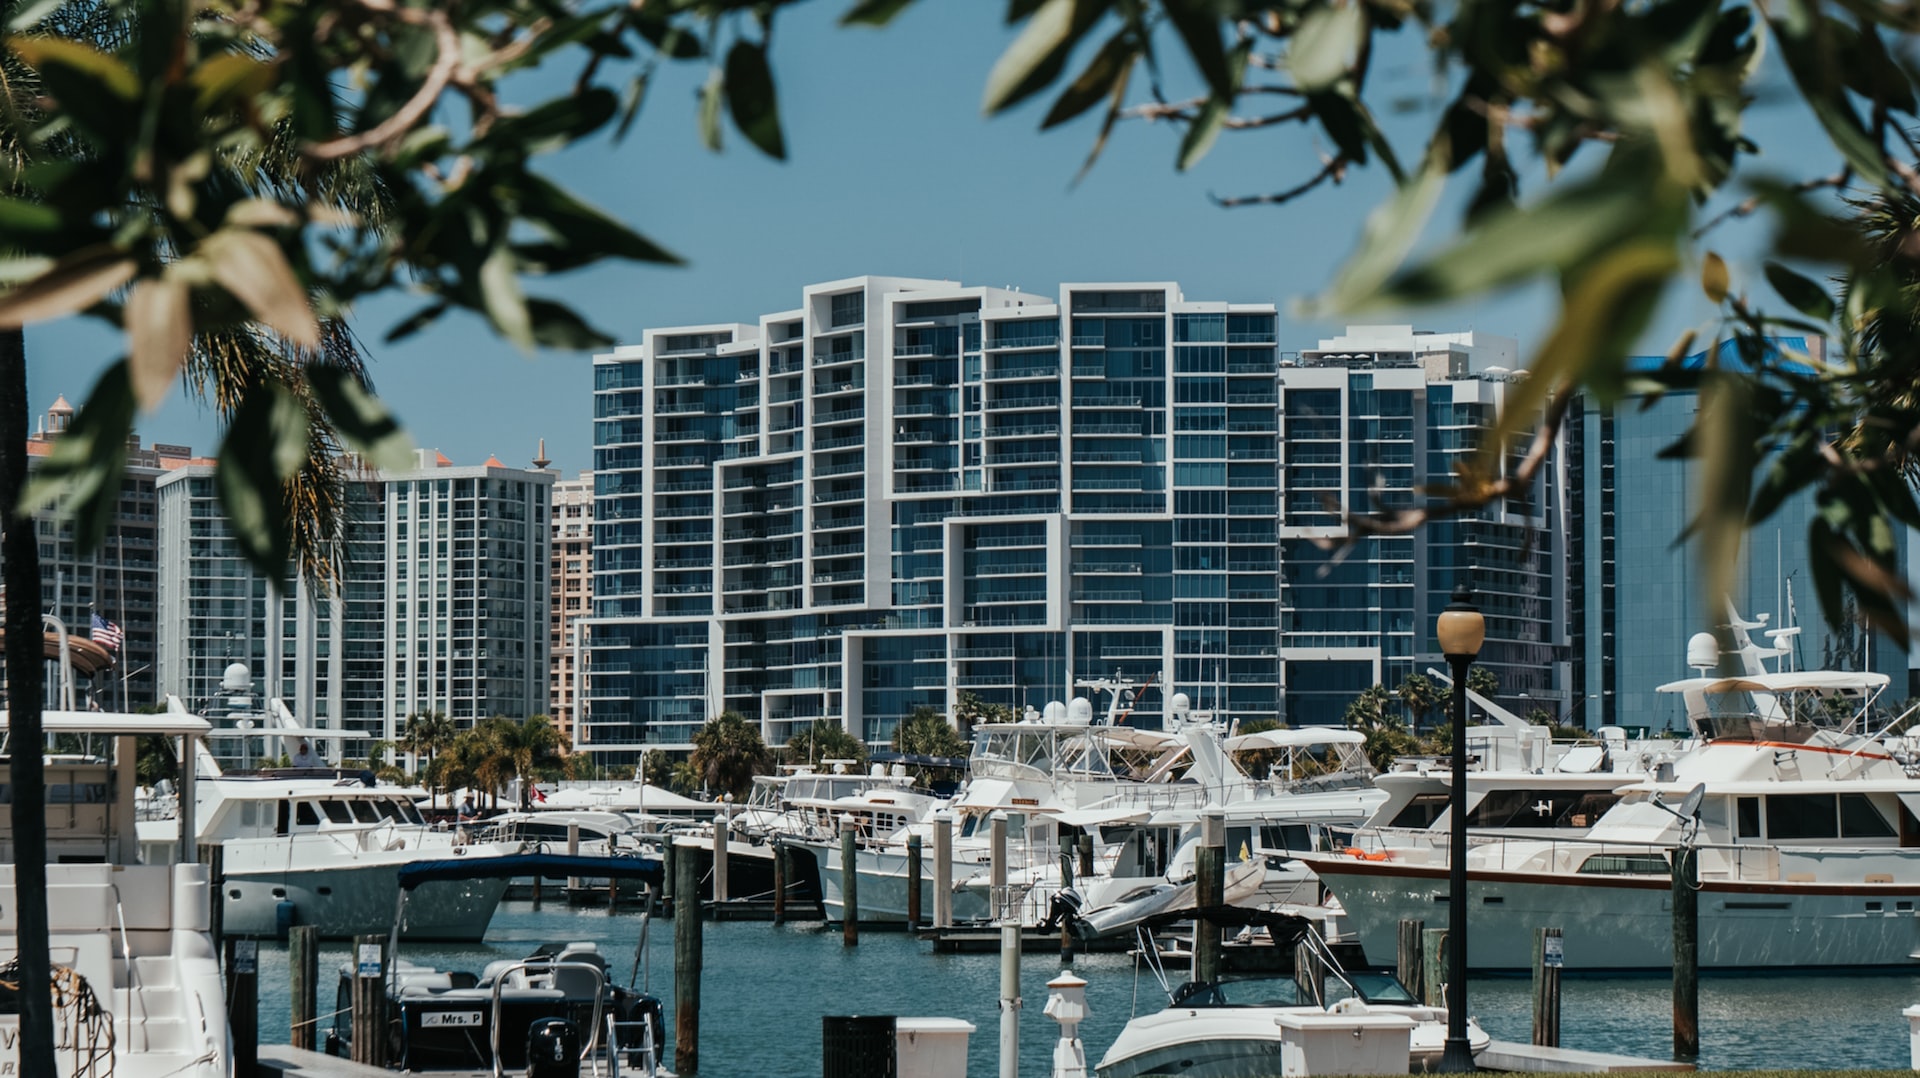 Modern-looking condos overlooking a marina in Sarasota.